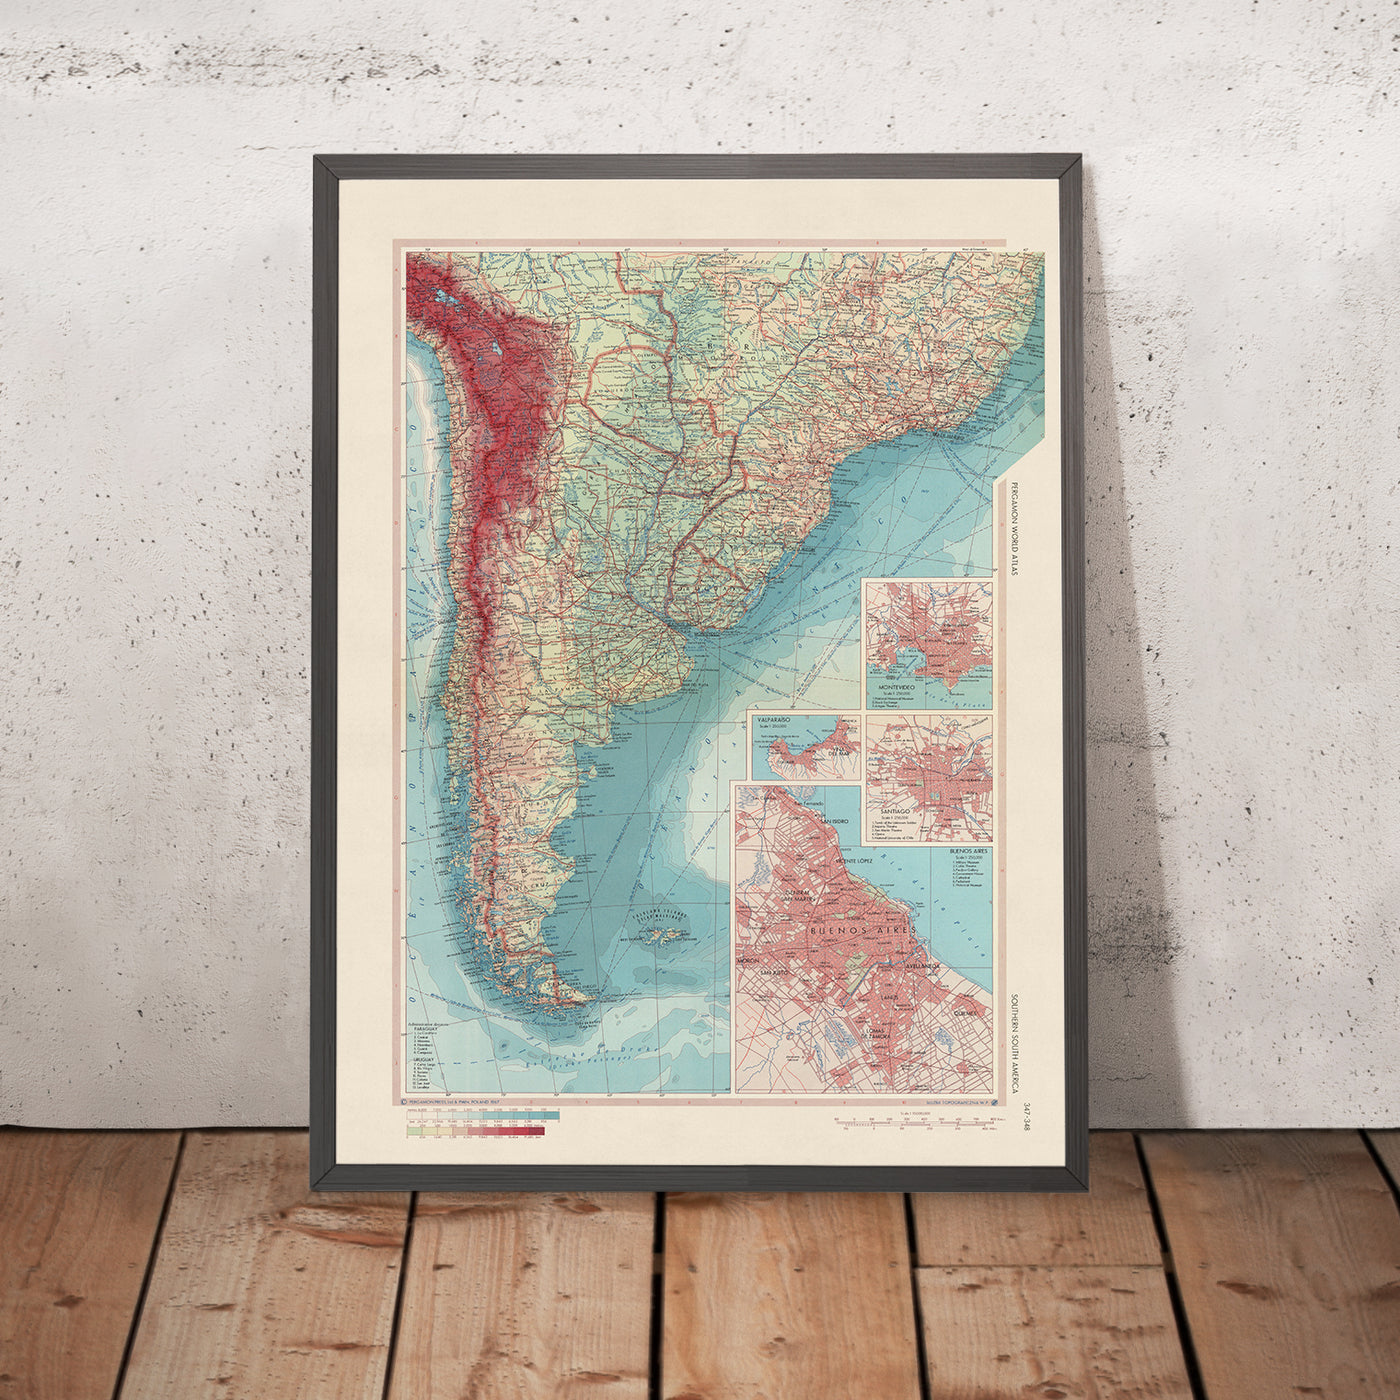 Alte Karte von Südsüdamerika, 1967: Montevideo, Valparaiso, Santiago, Buenos Aires und Brasilia